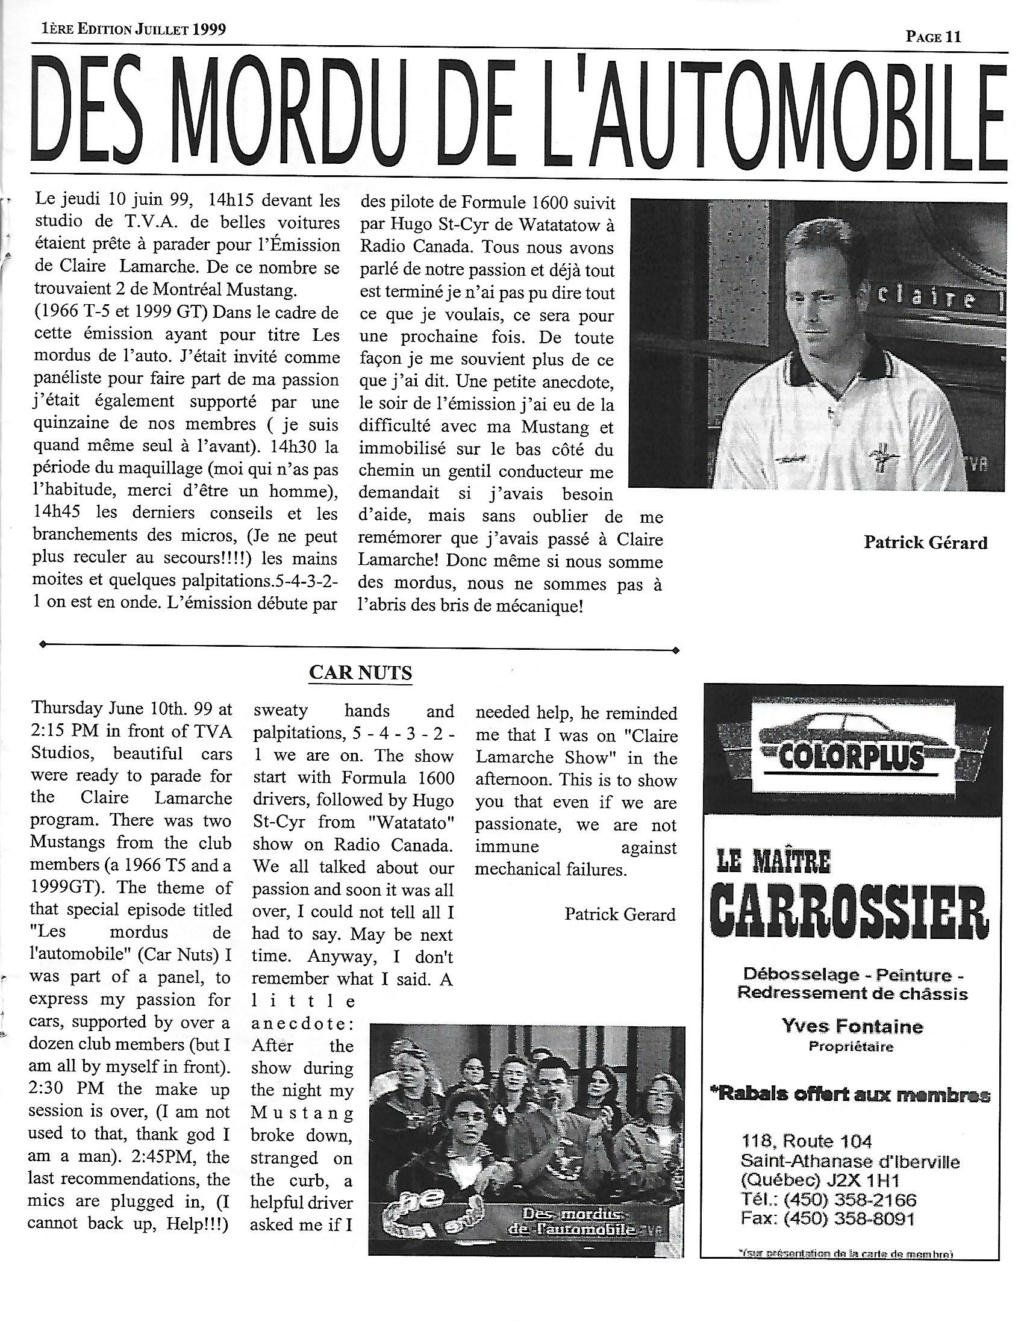 Montréal Mustang dans le temps! 1981 à aujourd'hui (Histoire en photos) - Page 9 1999-039